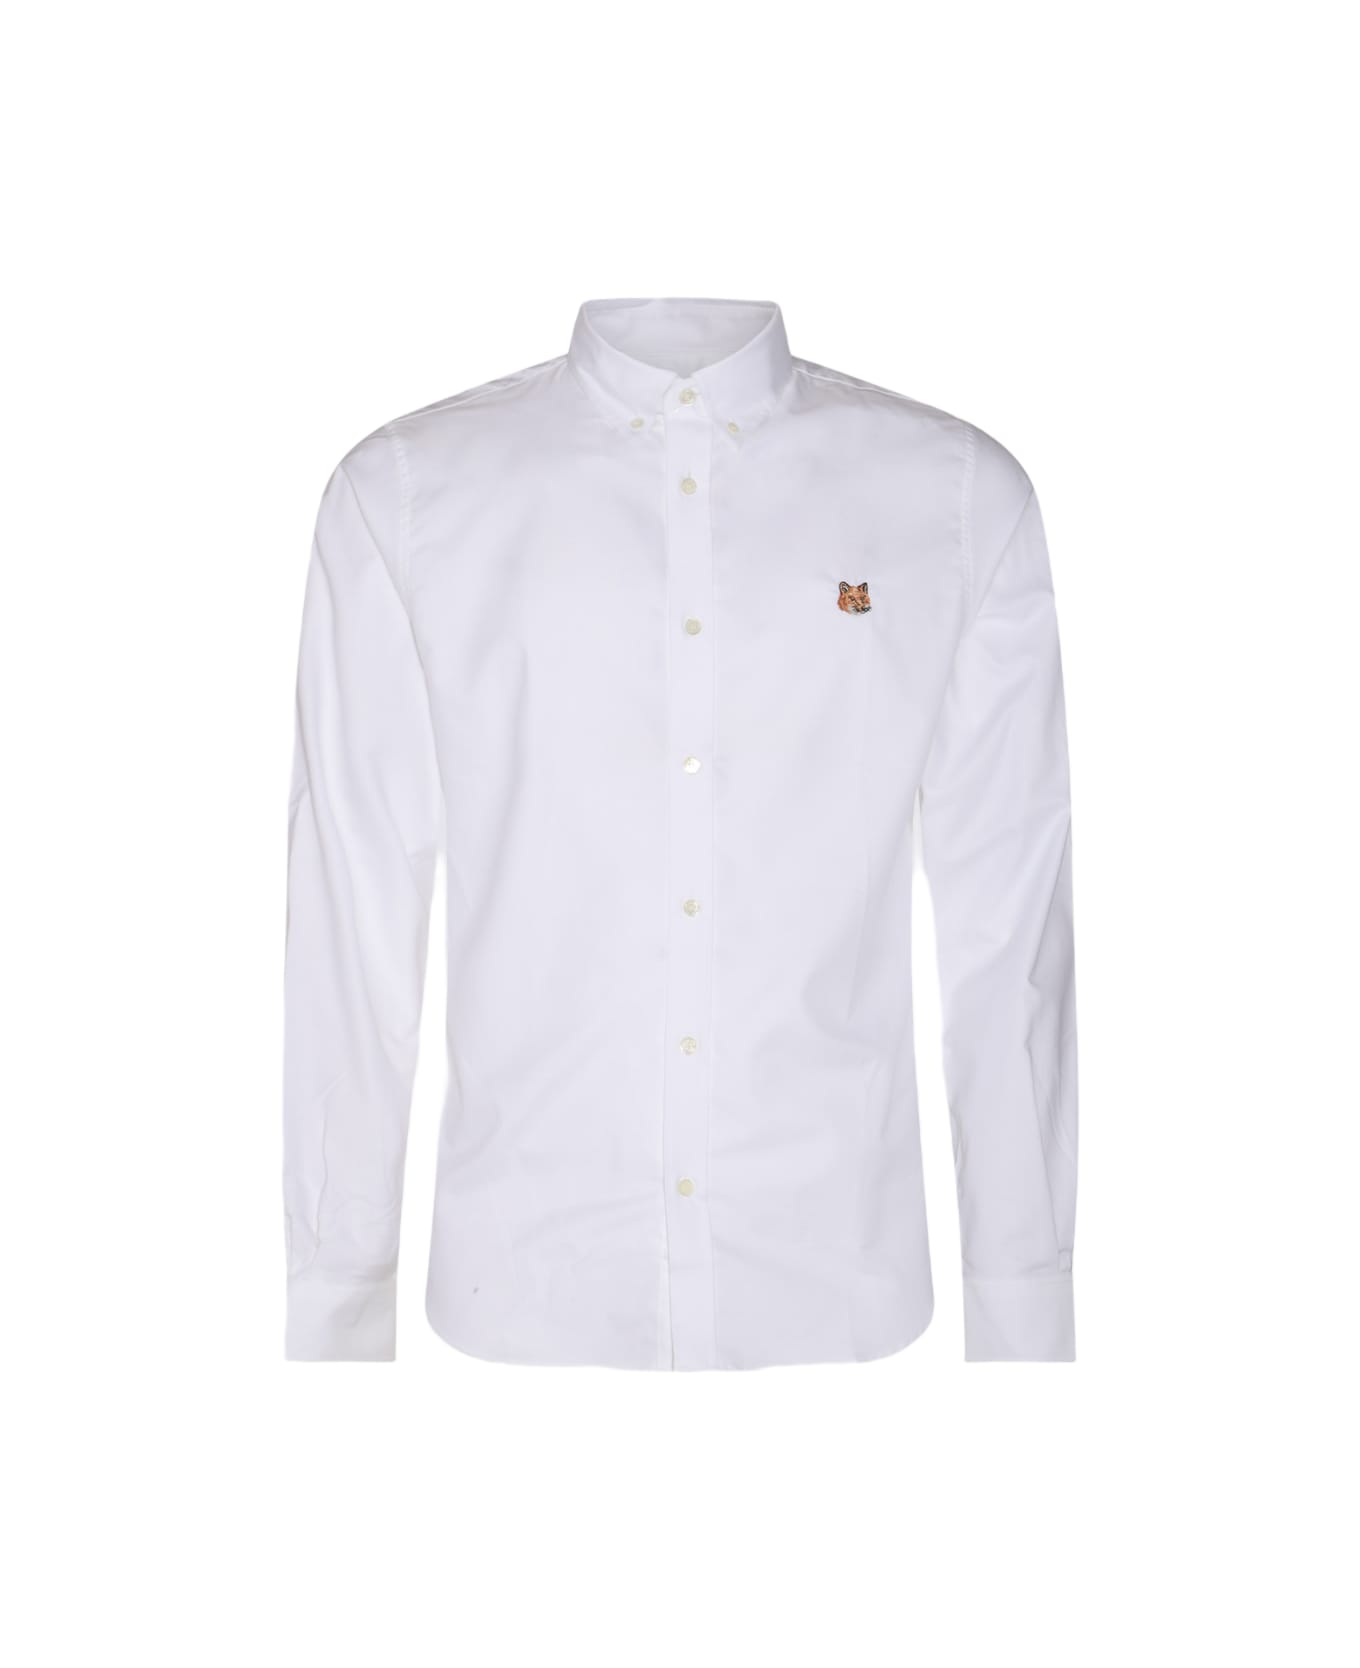 Maison Kitsuné White Cotton Shirt - White シャツ